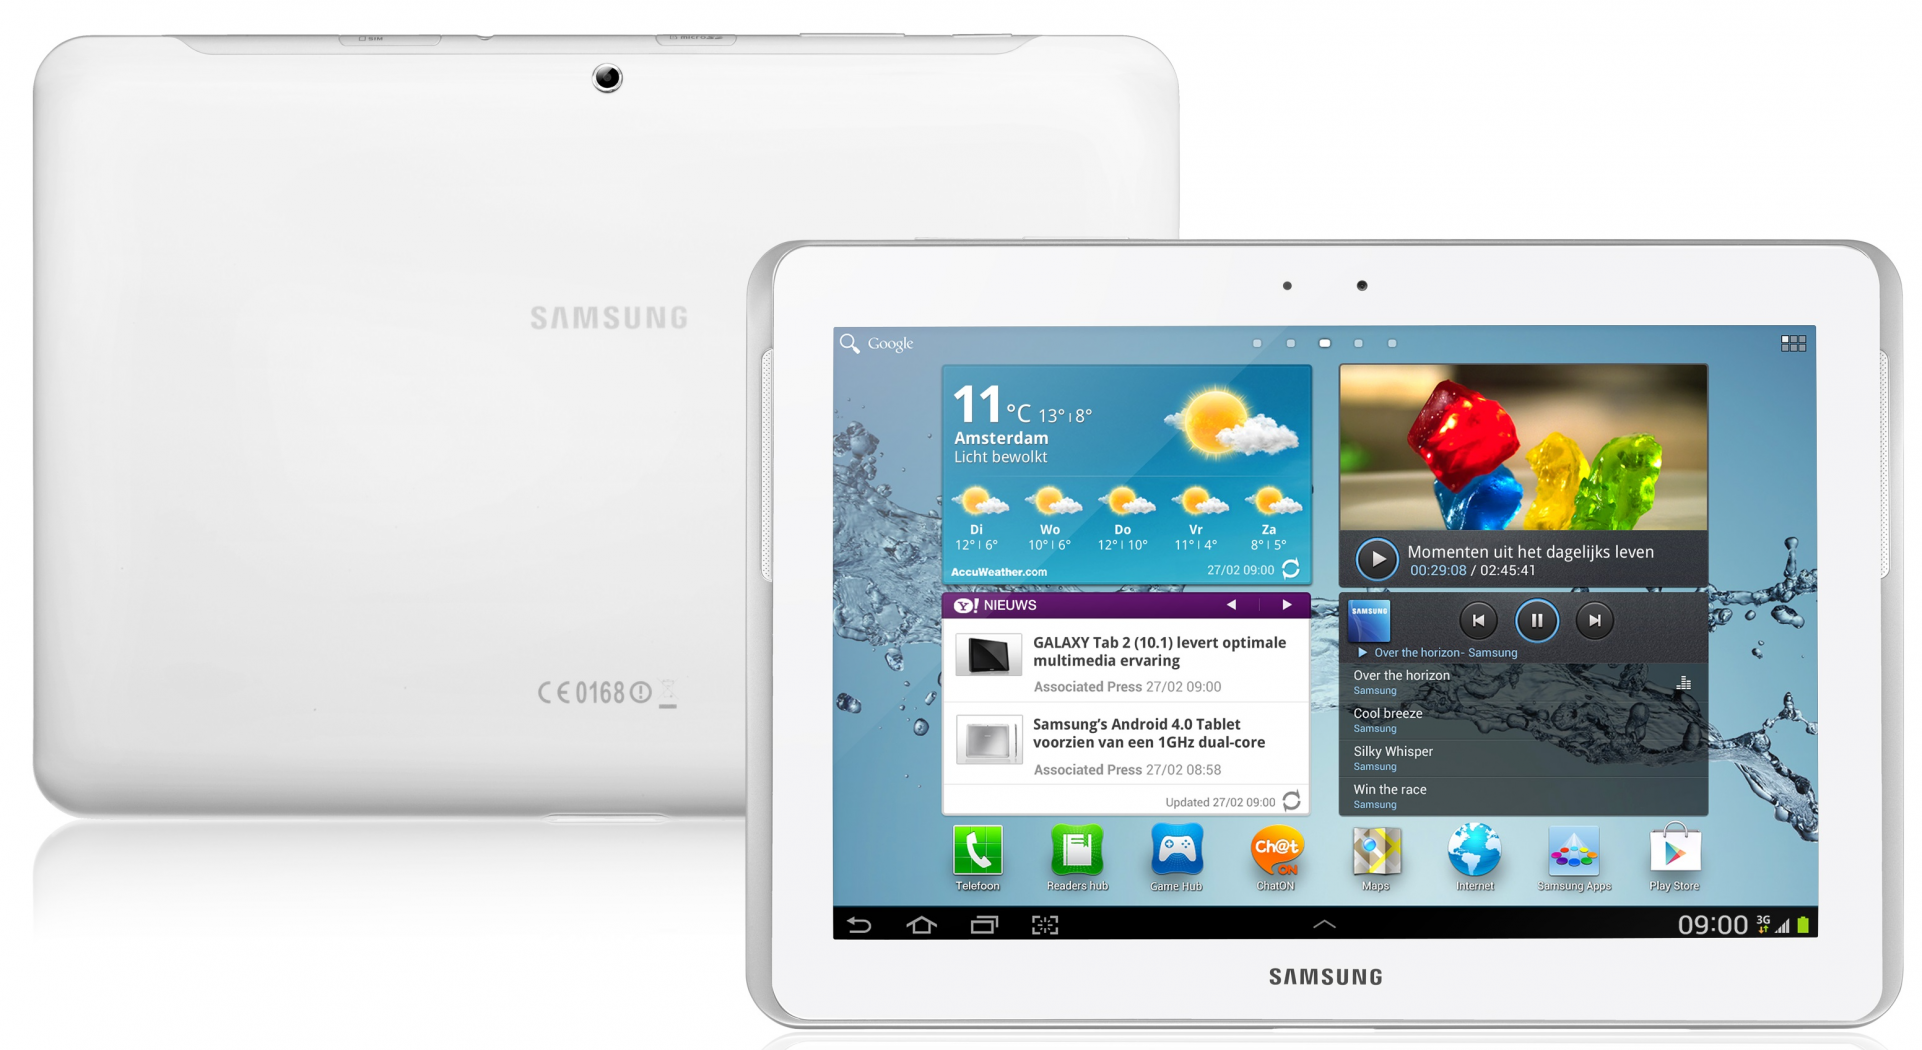 Samsung Galaxy Tab 2 kopen tijdens black friday vergelijk hier